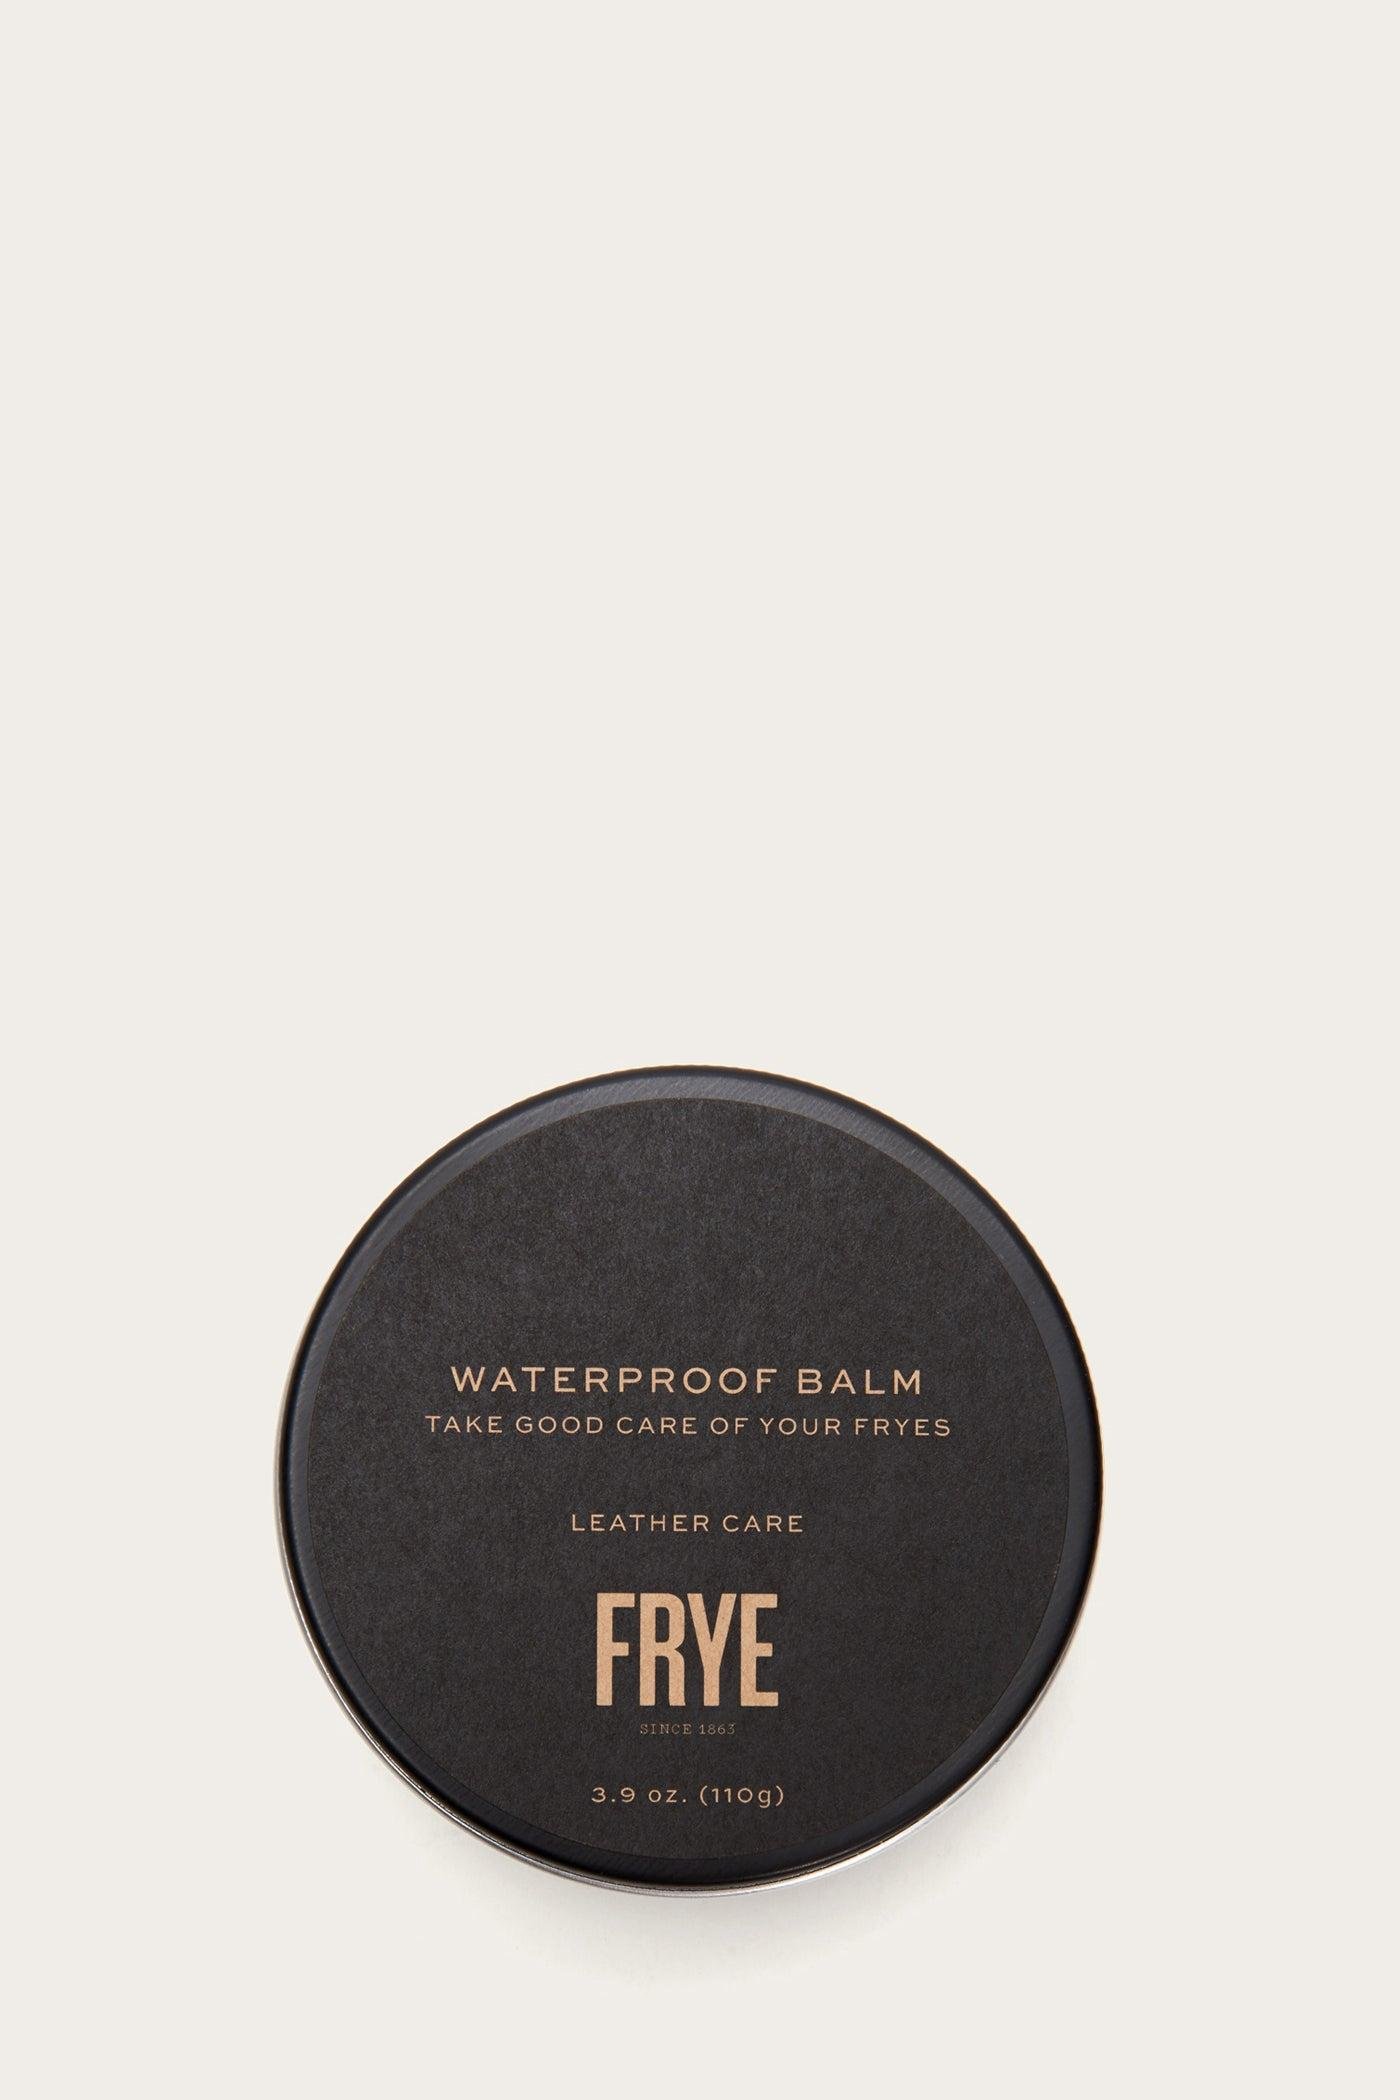 FRYE Waterproof Balm by THE FRYE COMPANY